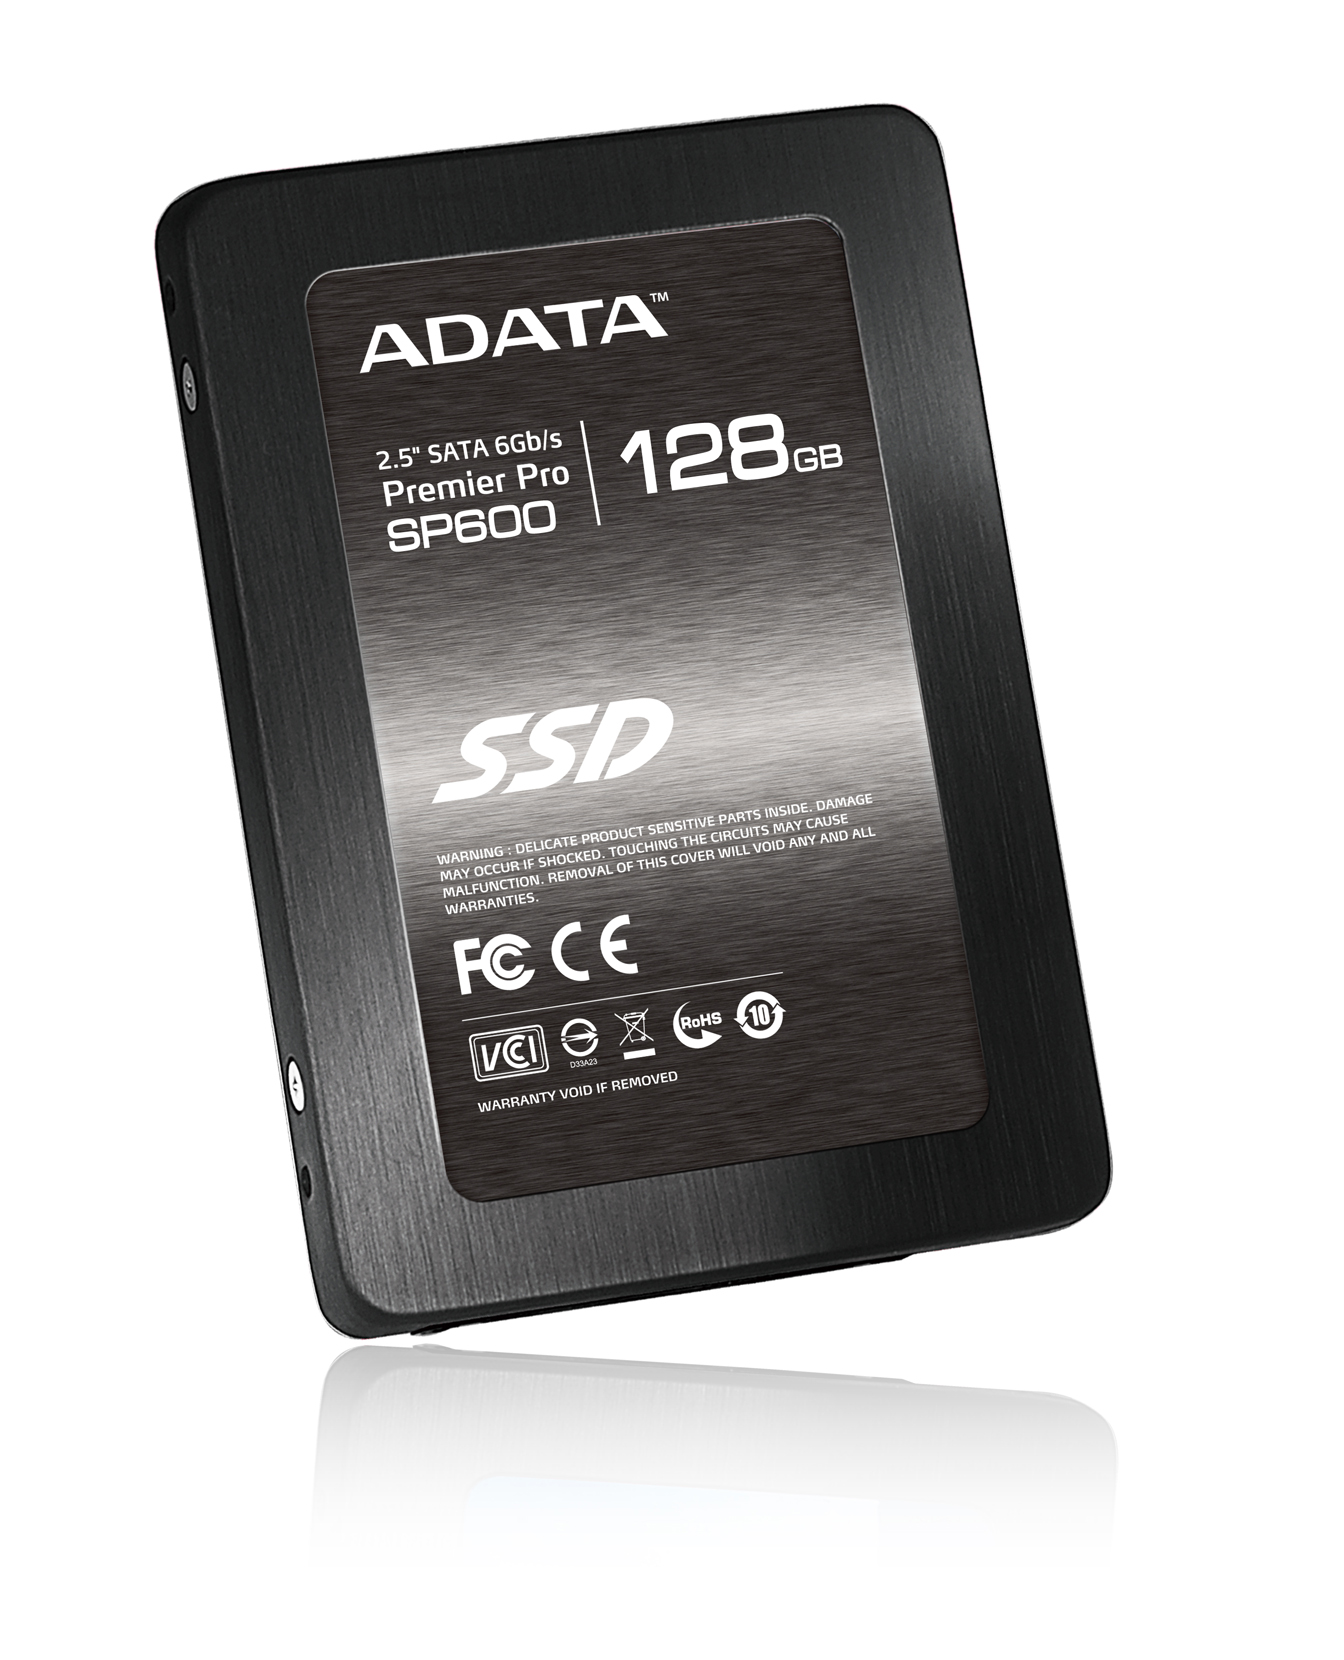 Immagine pubblicata in relazione al seguente contenuto: ADATA annuncia la linea di Solid State Drive (SSD) SATA III SP600 | Nome immagine: news18261_SSD-ADATA-SP600_1.jpg